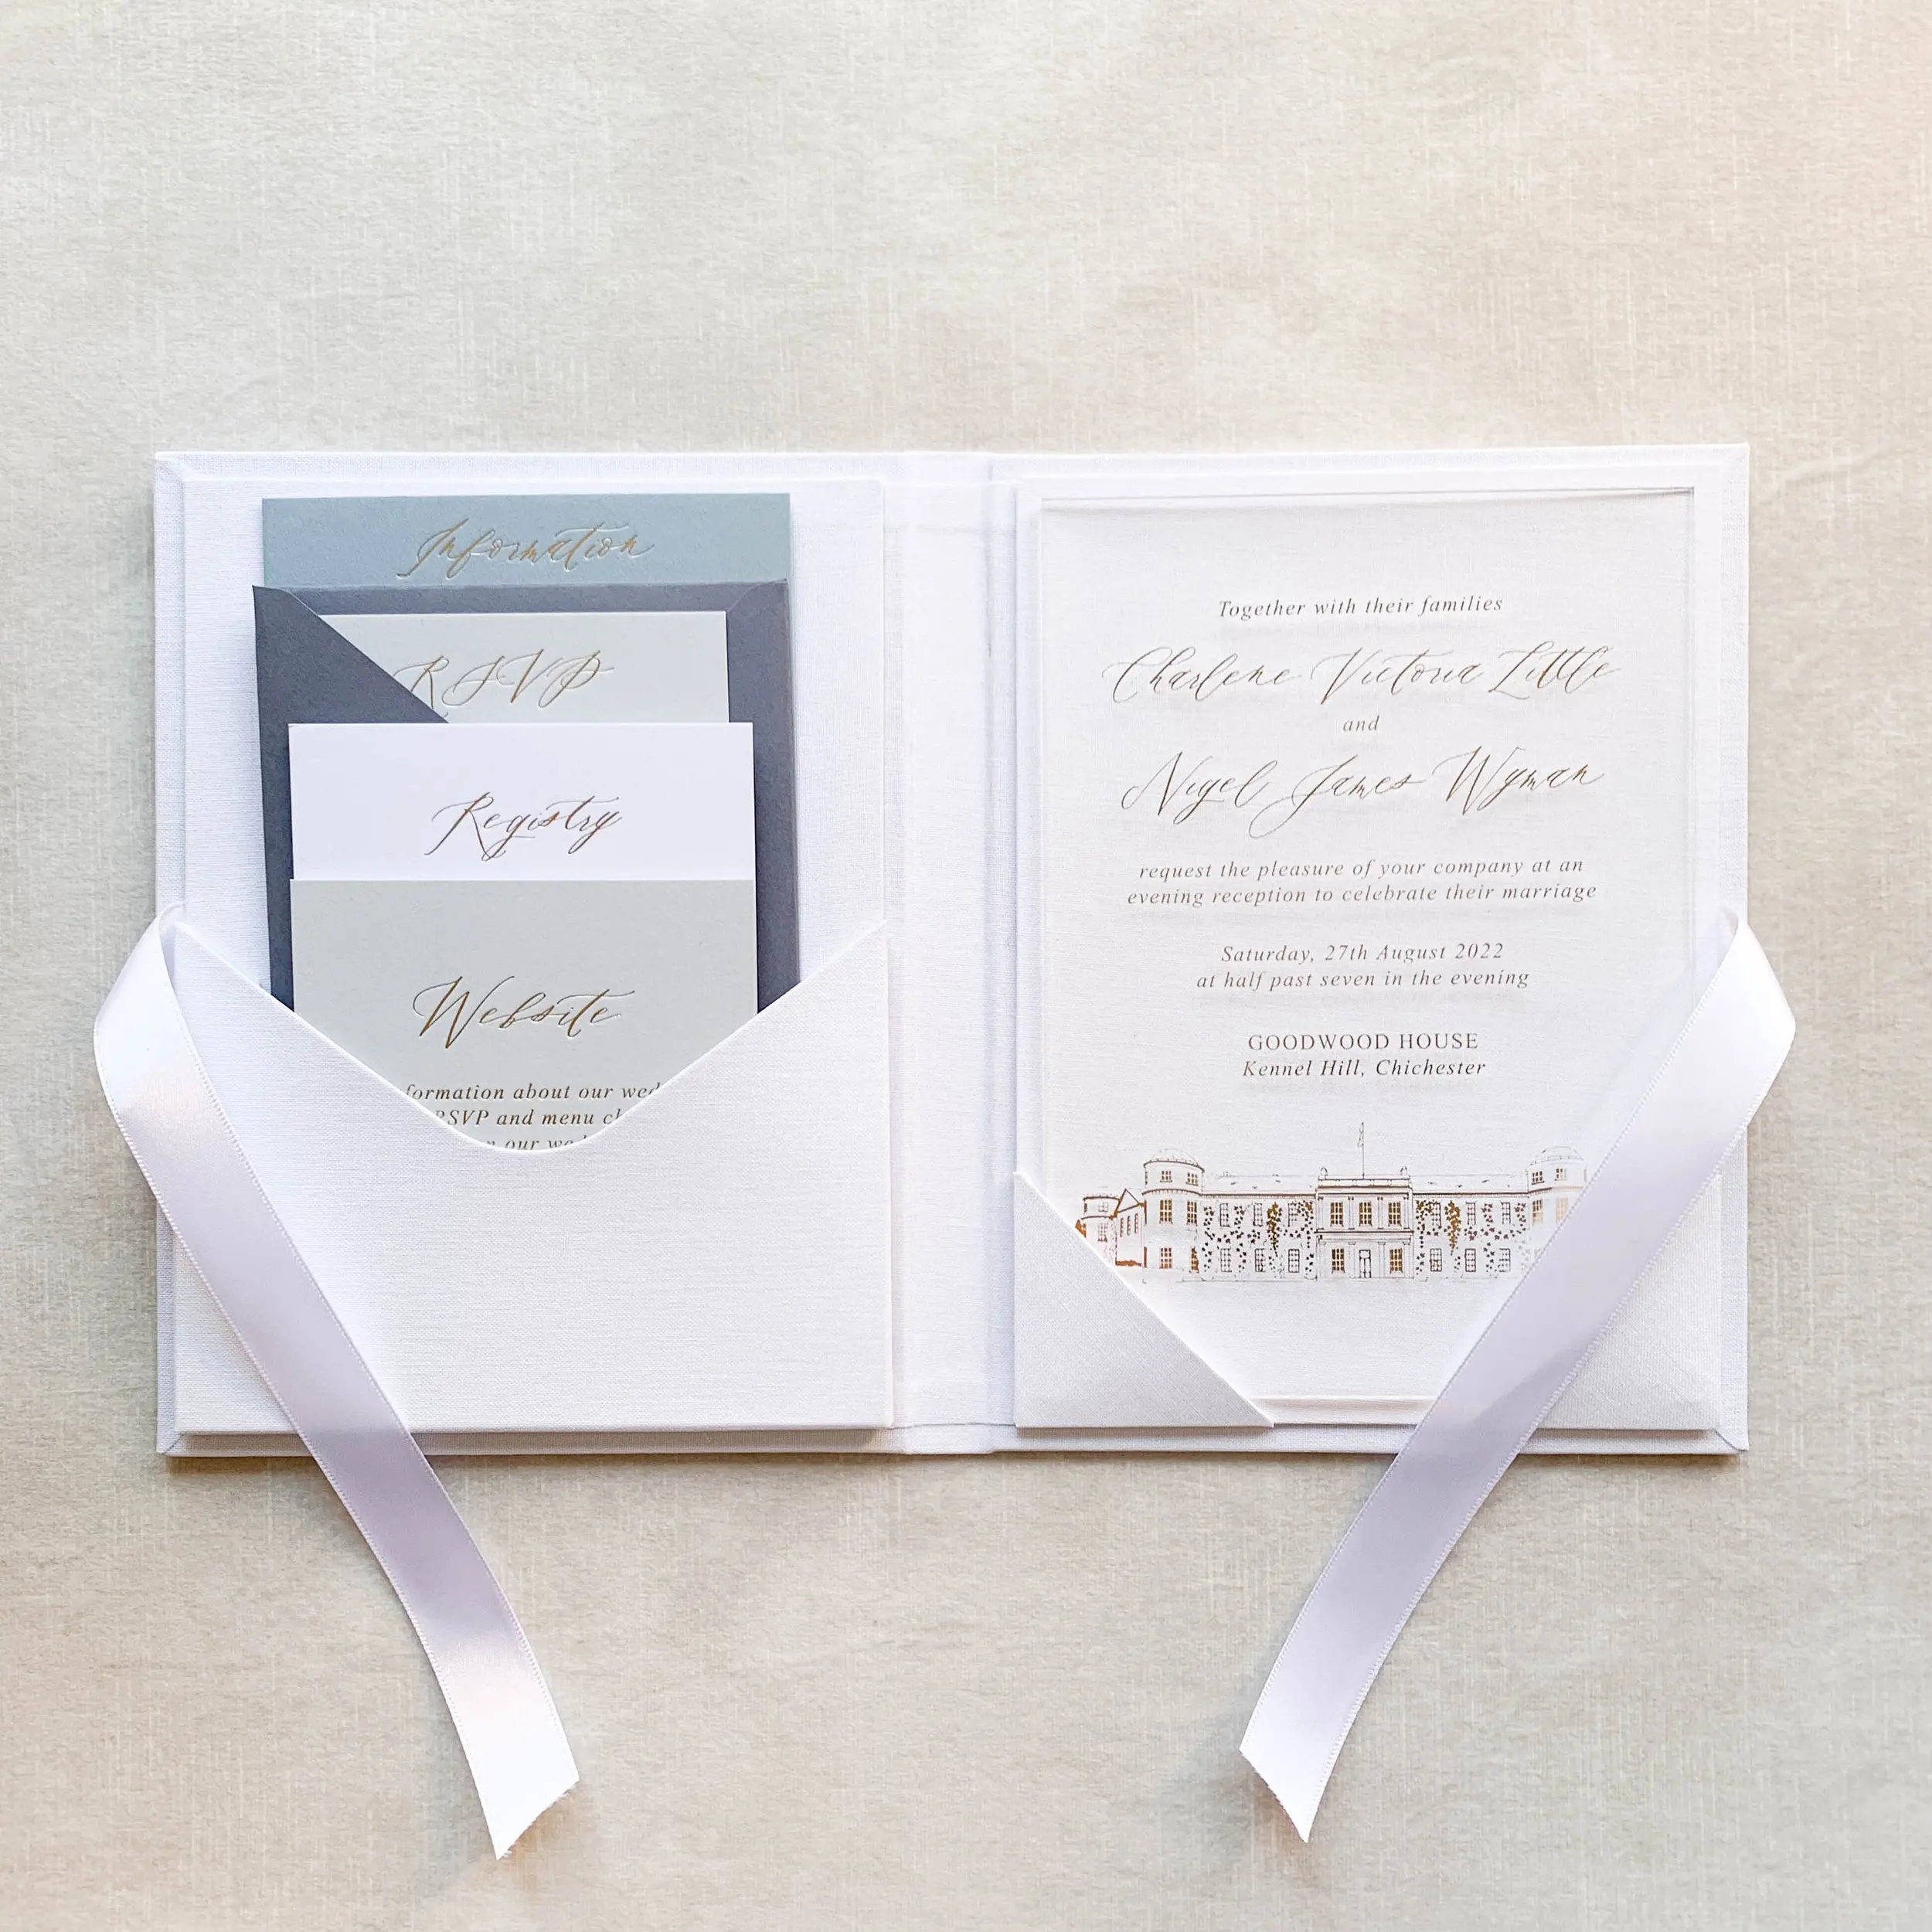 Caja de tapa dura de terciopelo para tarjeta de boda en relieve dorado a medida, caja de Lino de invitaciones de boda de lujo de 5*7 pulgadas con sobre